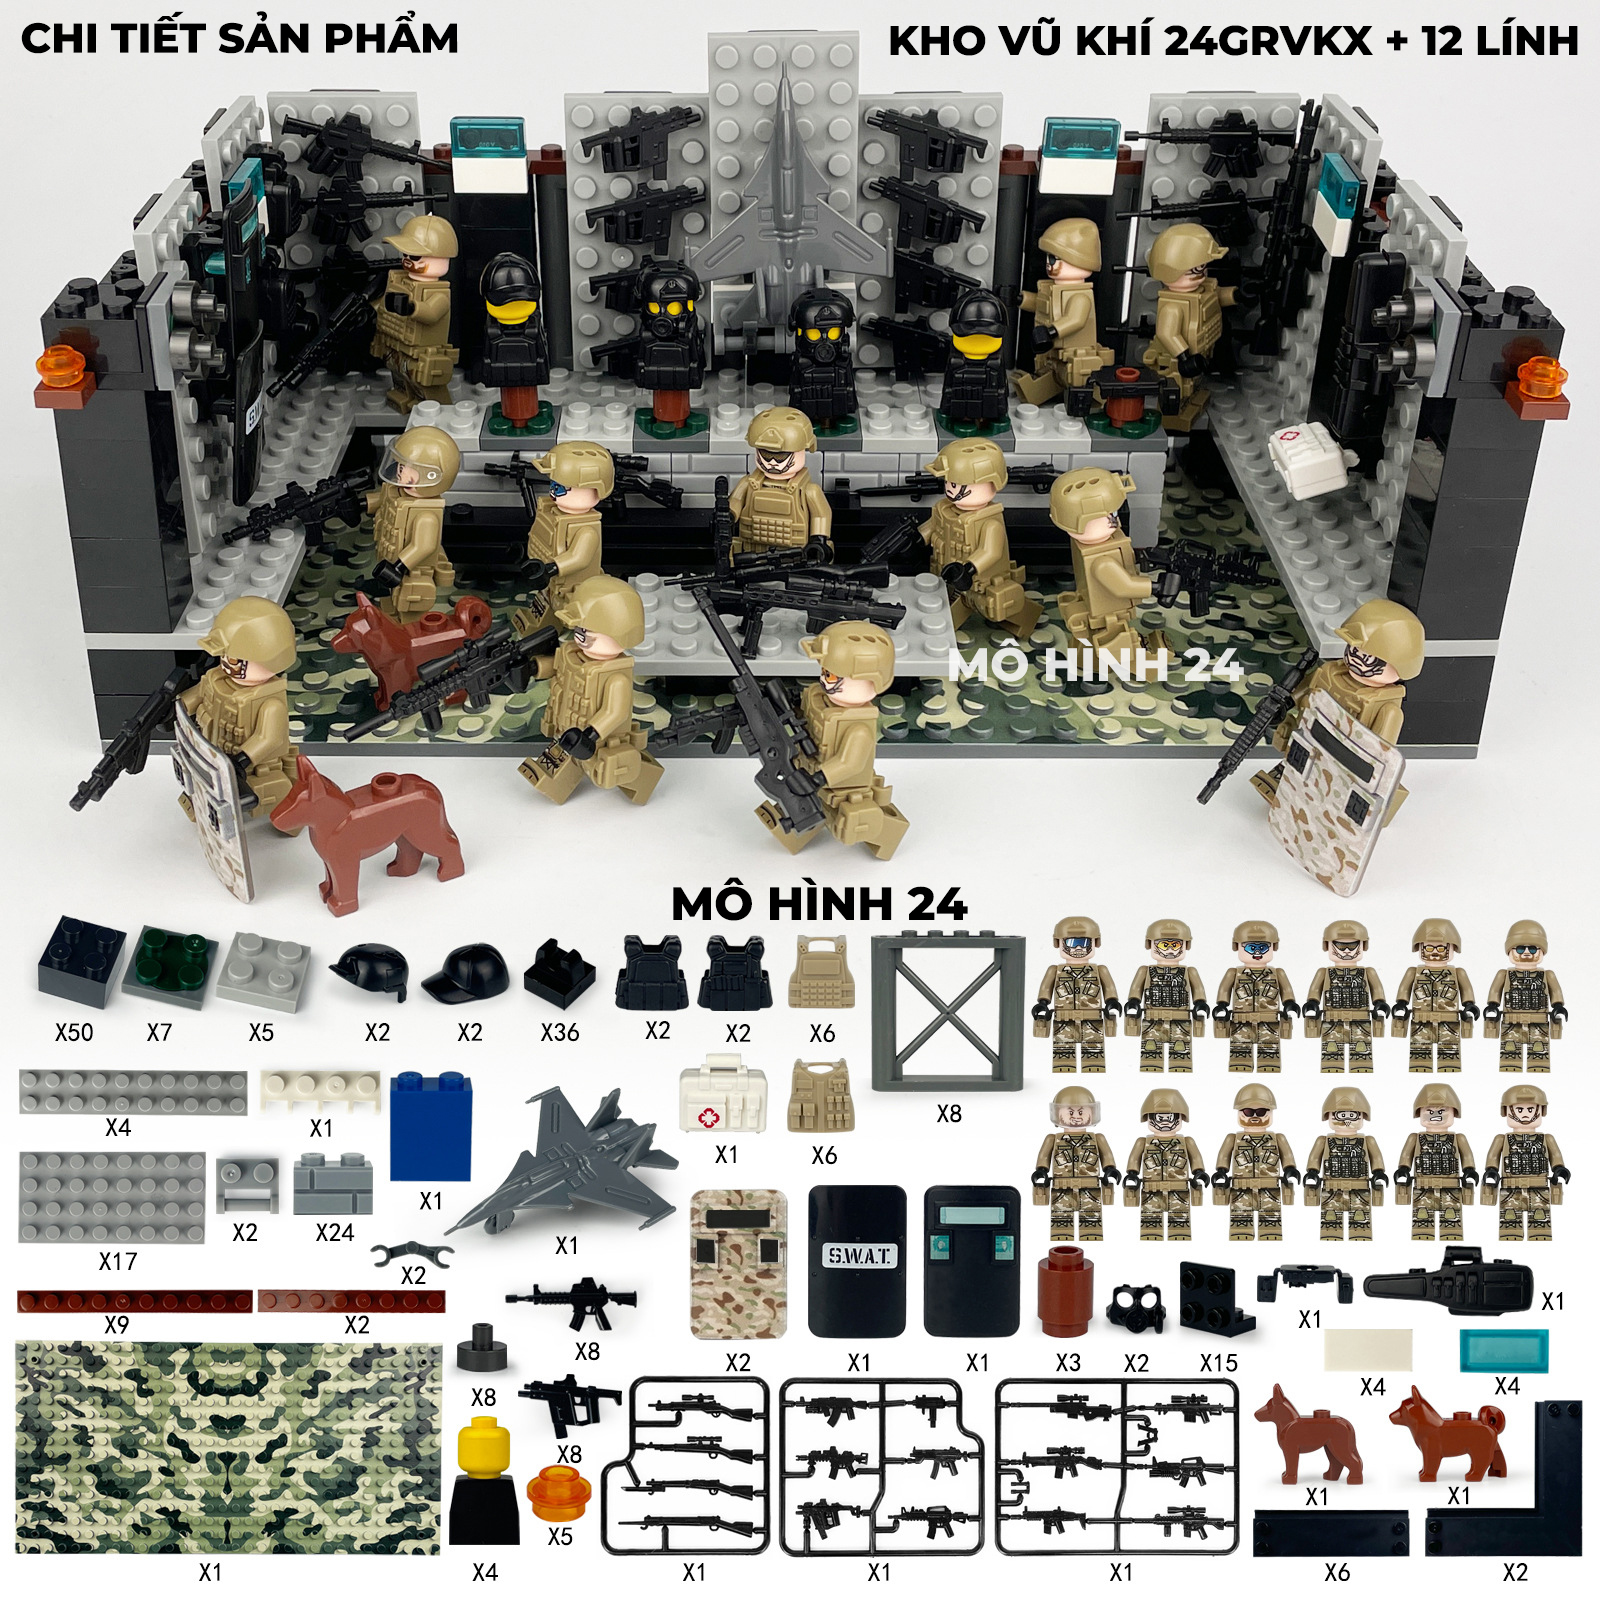 Bộ mô hình đồ chơi lắp ráp Kho vũ khí 24GRVKX lego minifigures nhân vật mini full option mô hình 24 swat kèm 12 lính